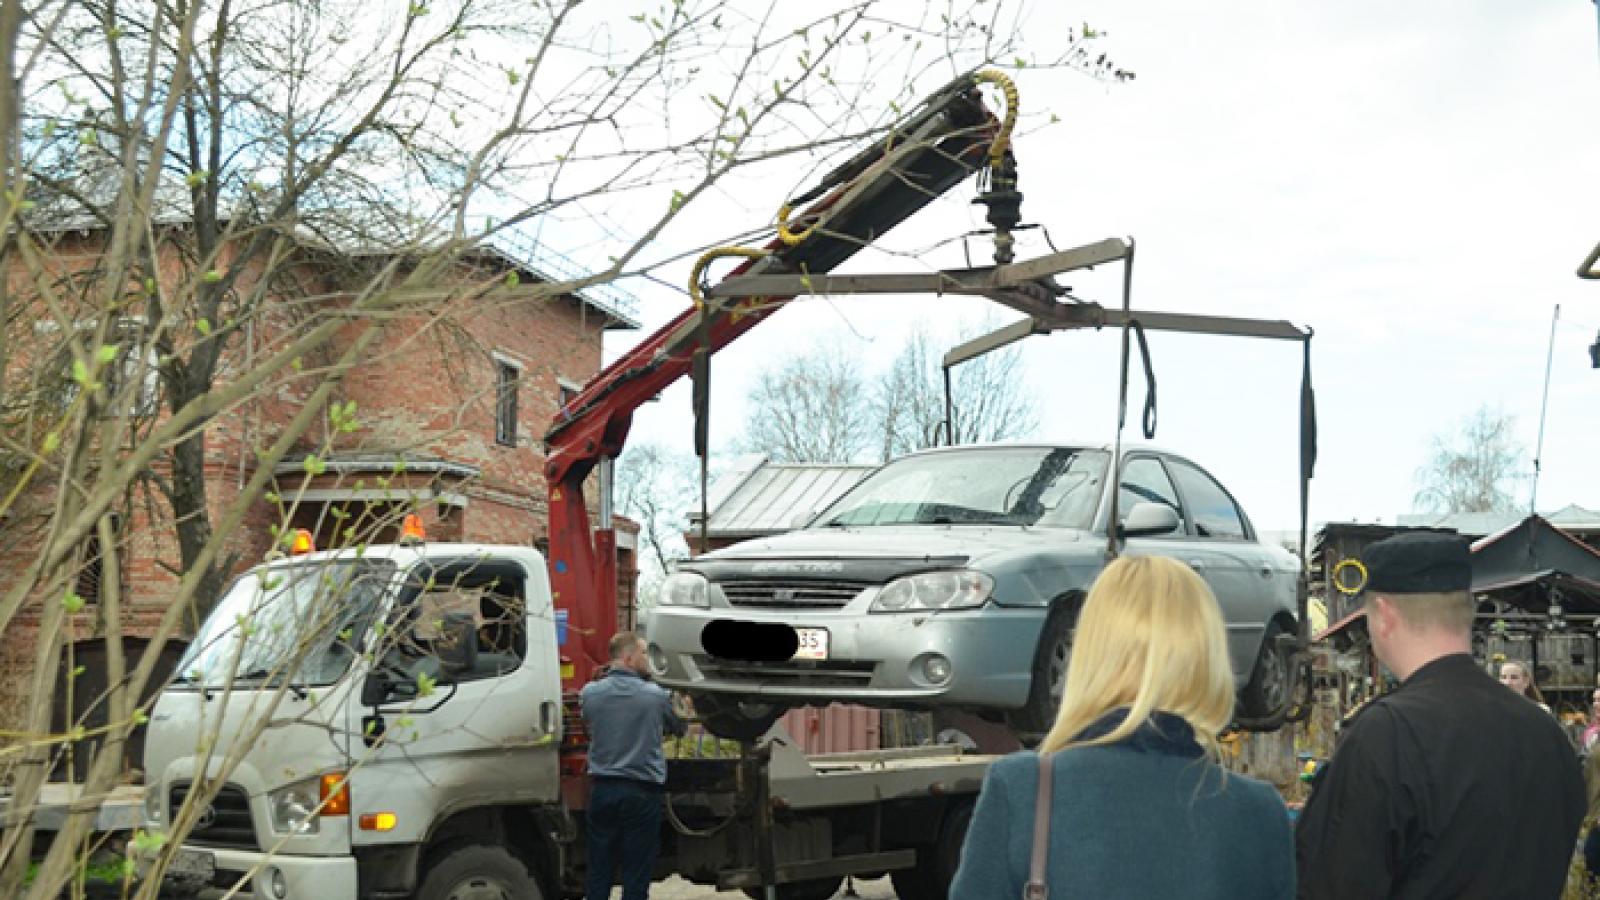  Три автомобиля арестовали судебные приставы в Вологде